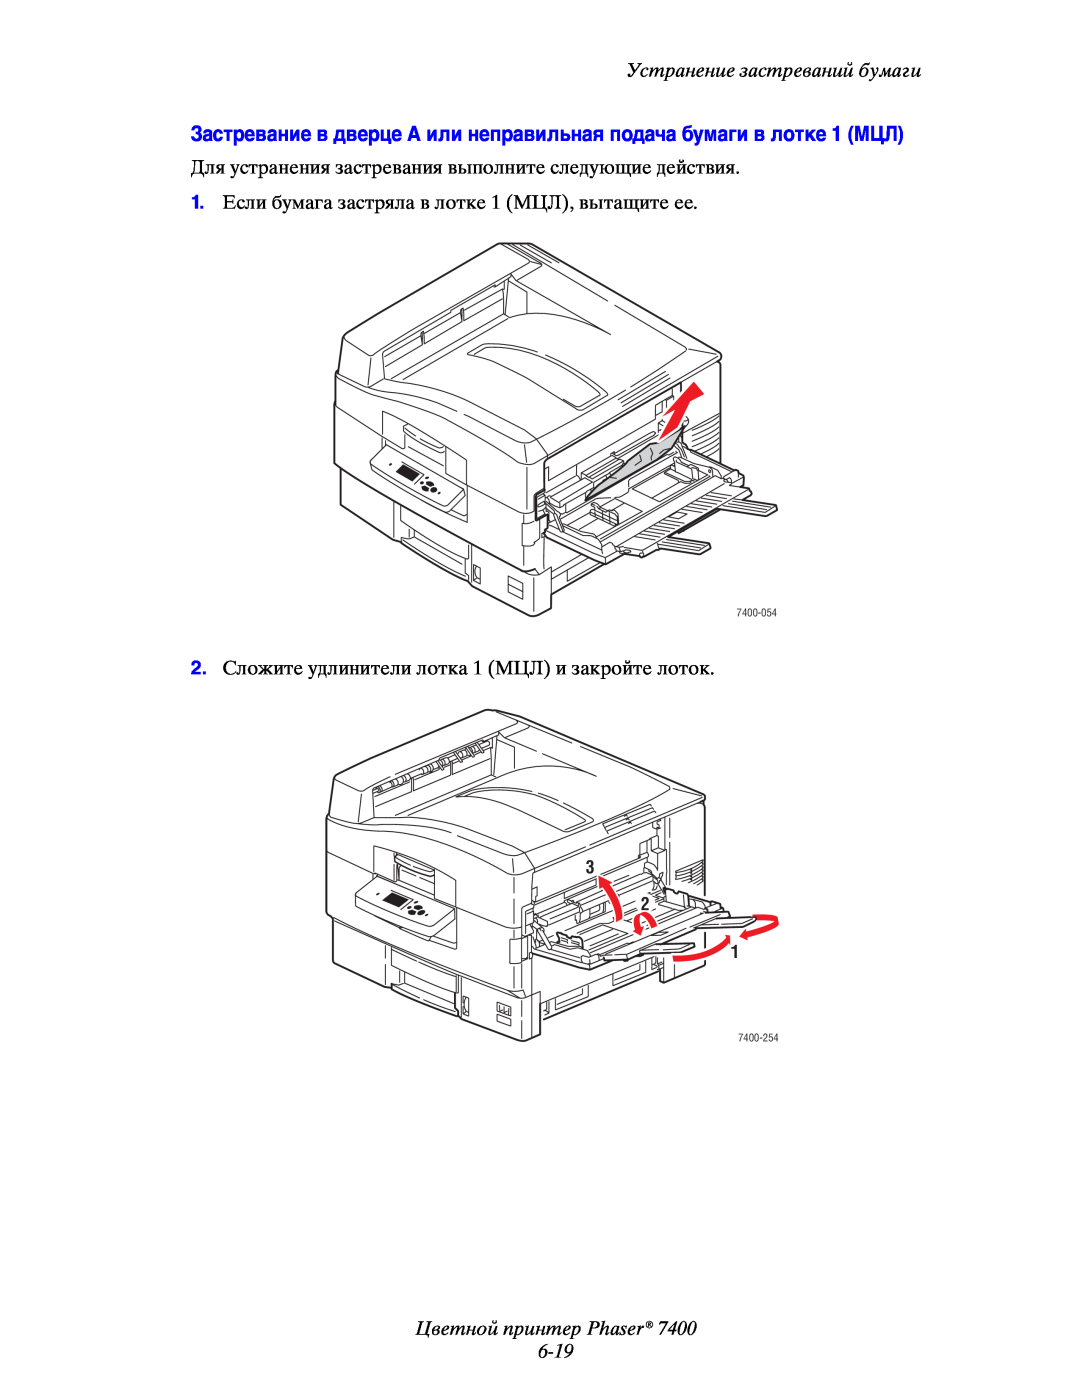 Xerox manual Цветной принтер Phaser 6-19, Устранение застреваний бумаги, 3 2 1, 7400-054, 7400-254 